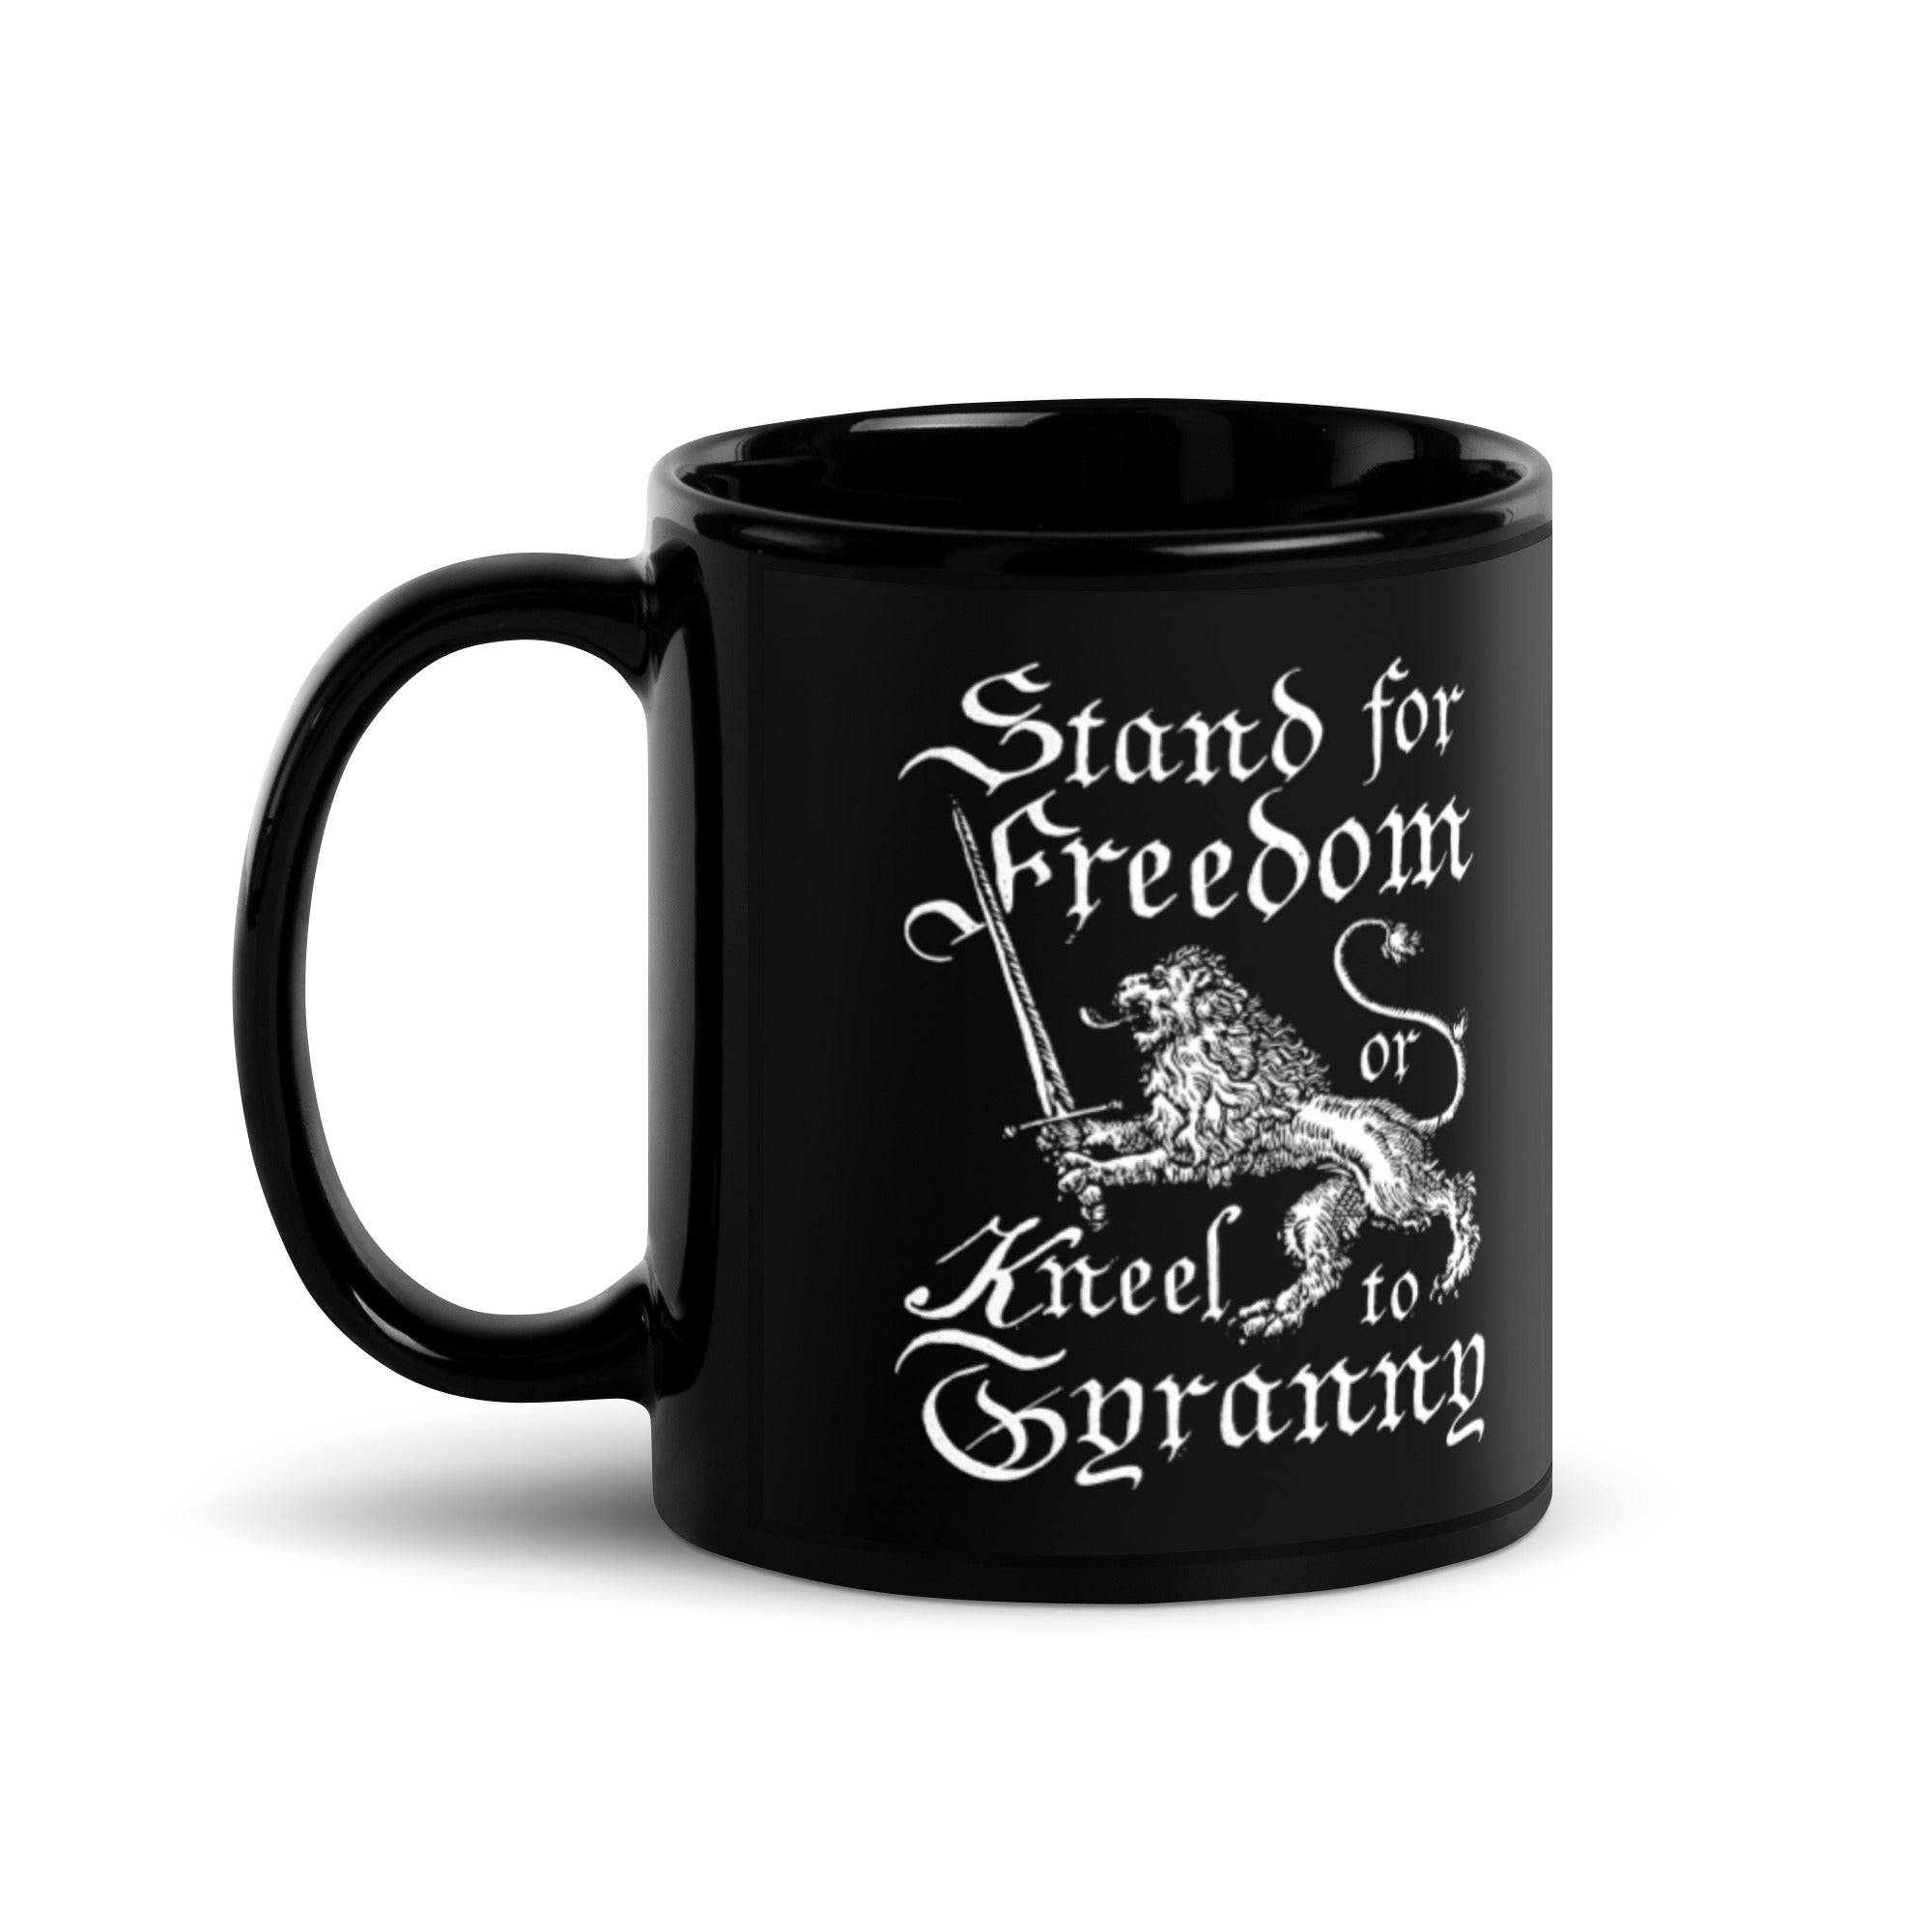 Stand for Freedom Mug